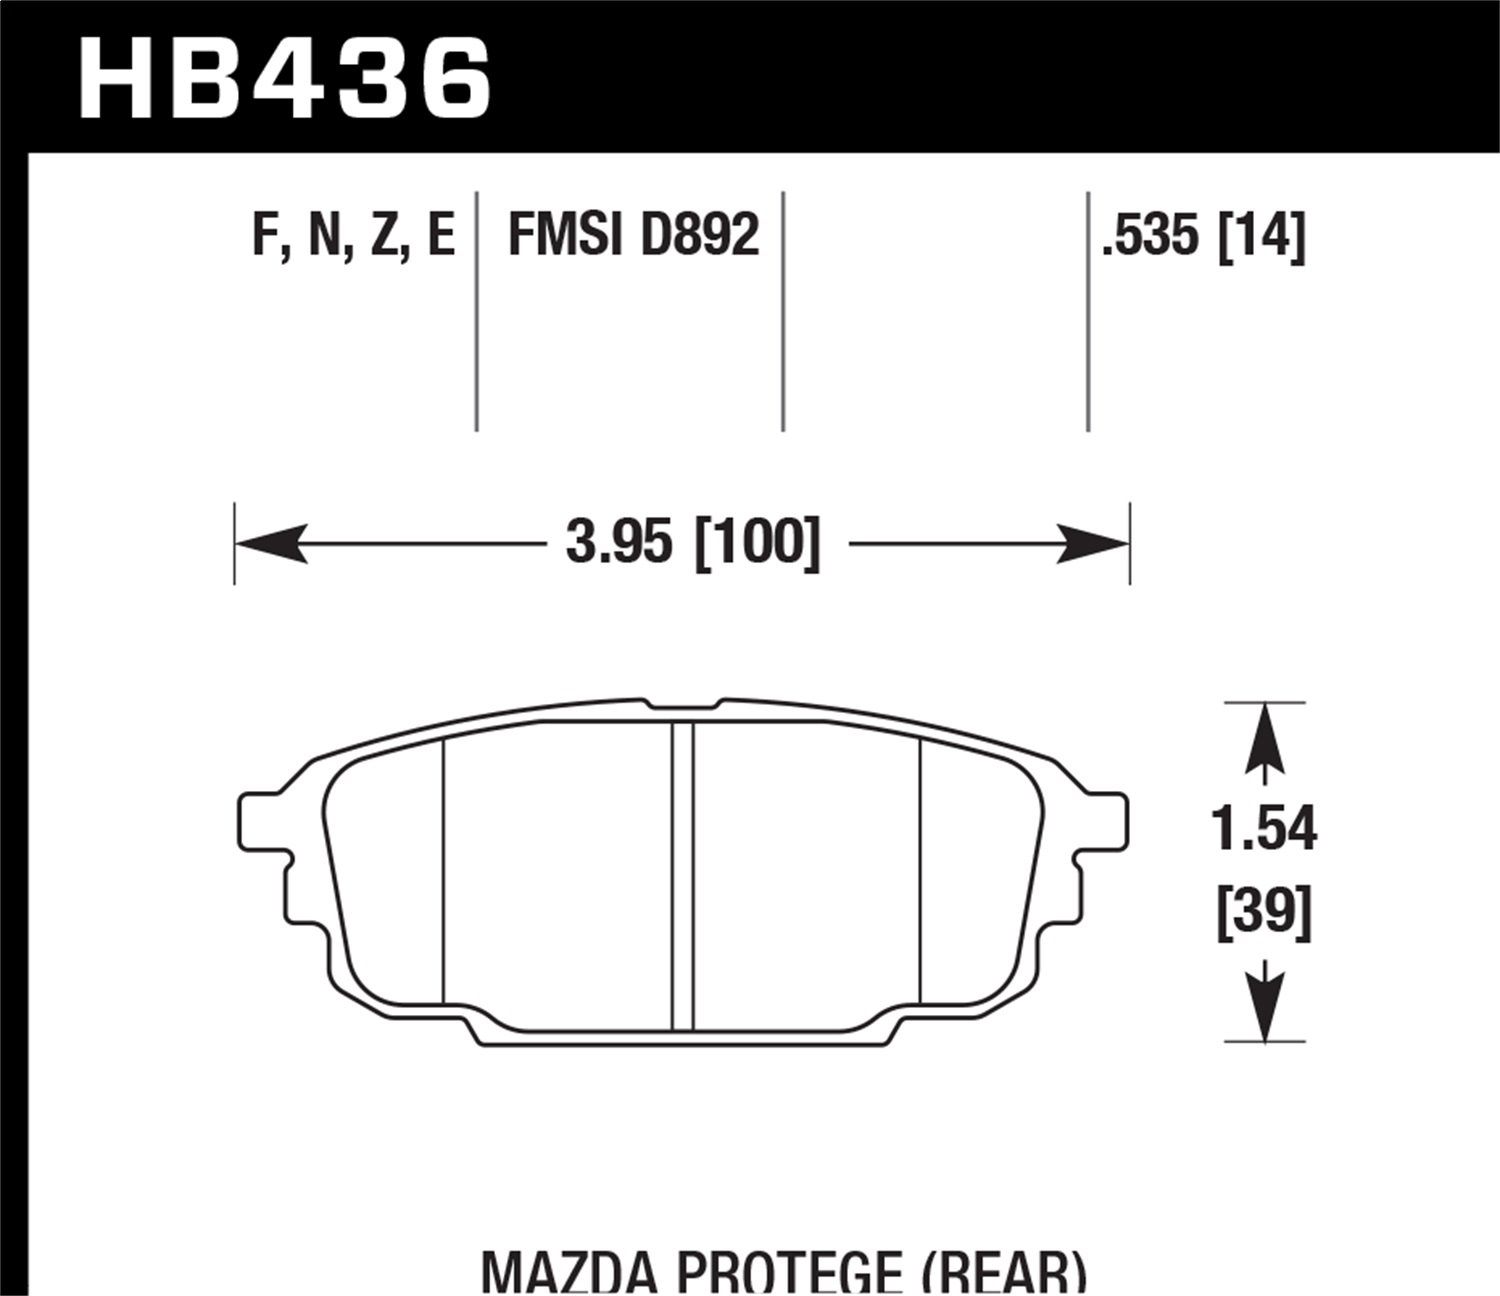 BLUE 9012 BRAKE PADS Mazda Ptotoge Rear